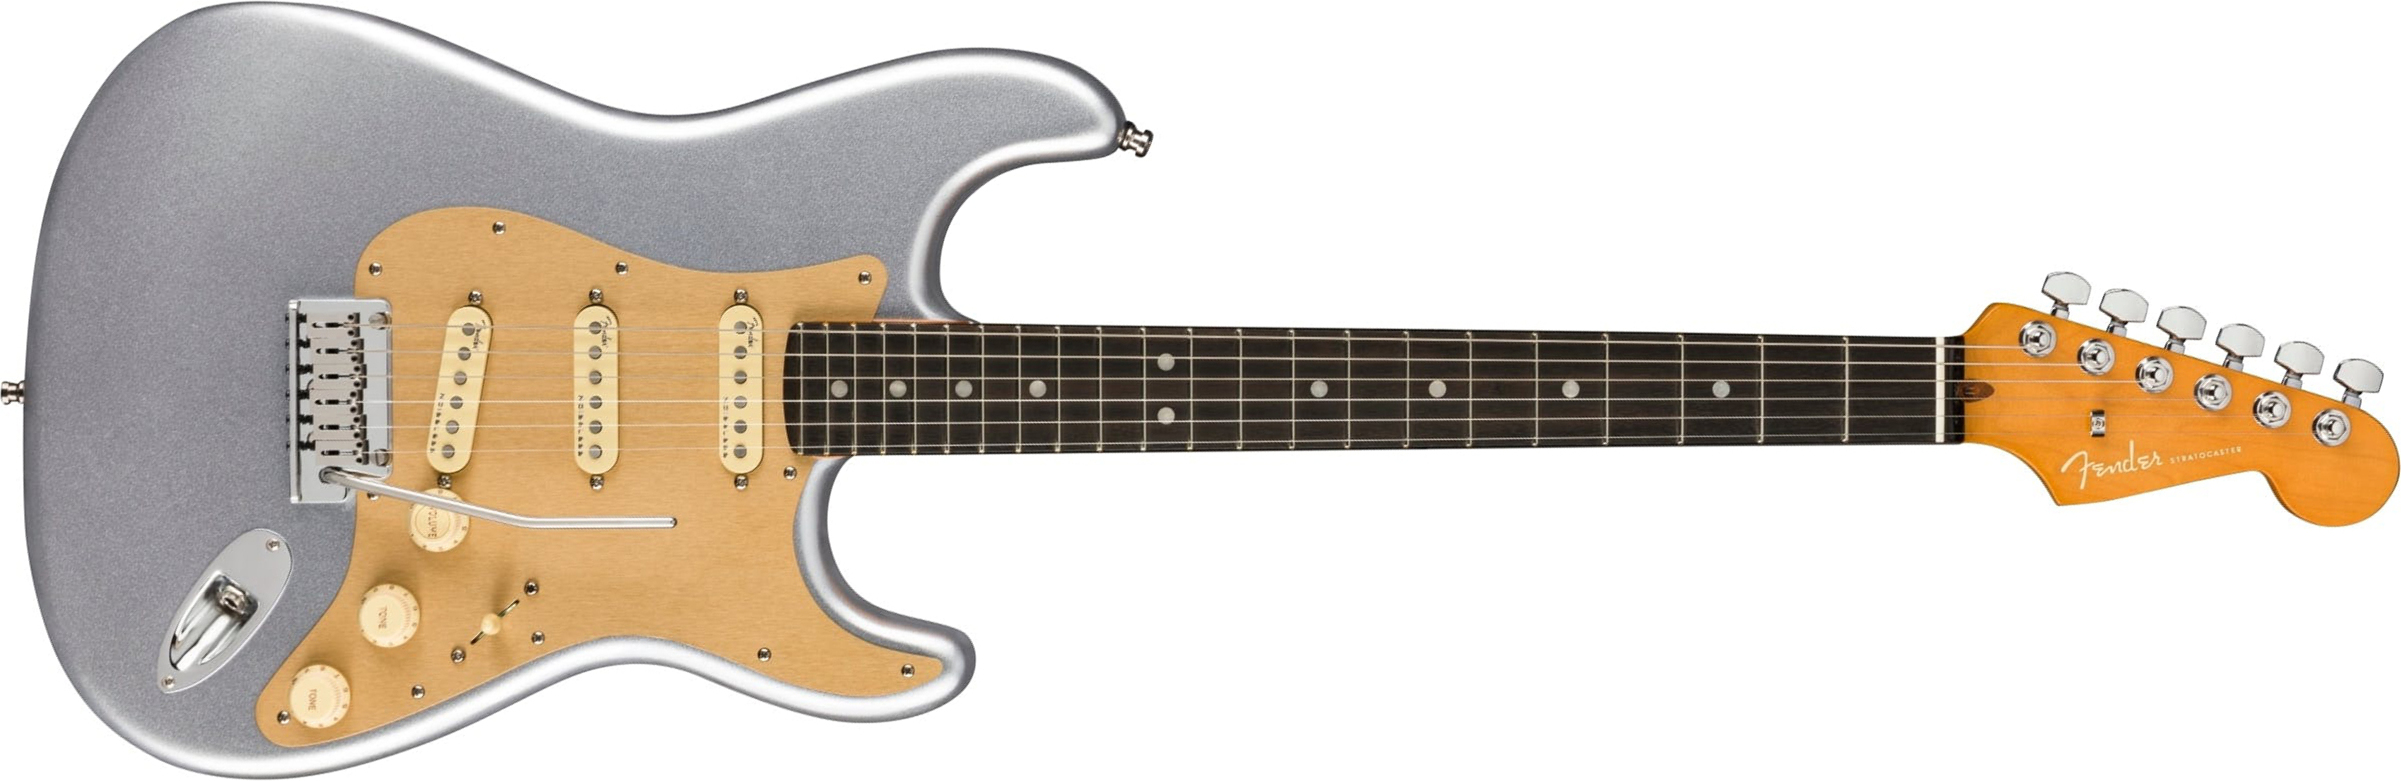 Fender Strat American Ultra Ltd Usa 3s Trem Eb - Quicksilver - Guitare Électrique Forme Str - Main picture